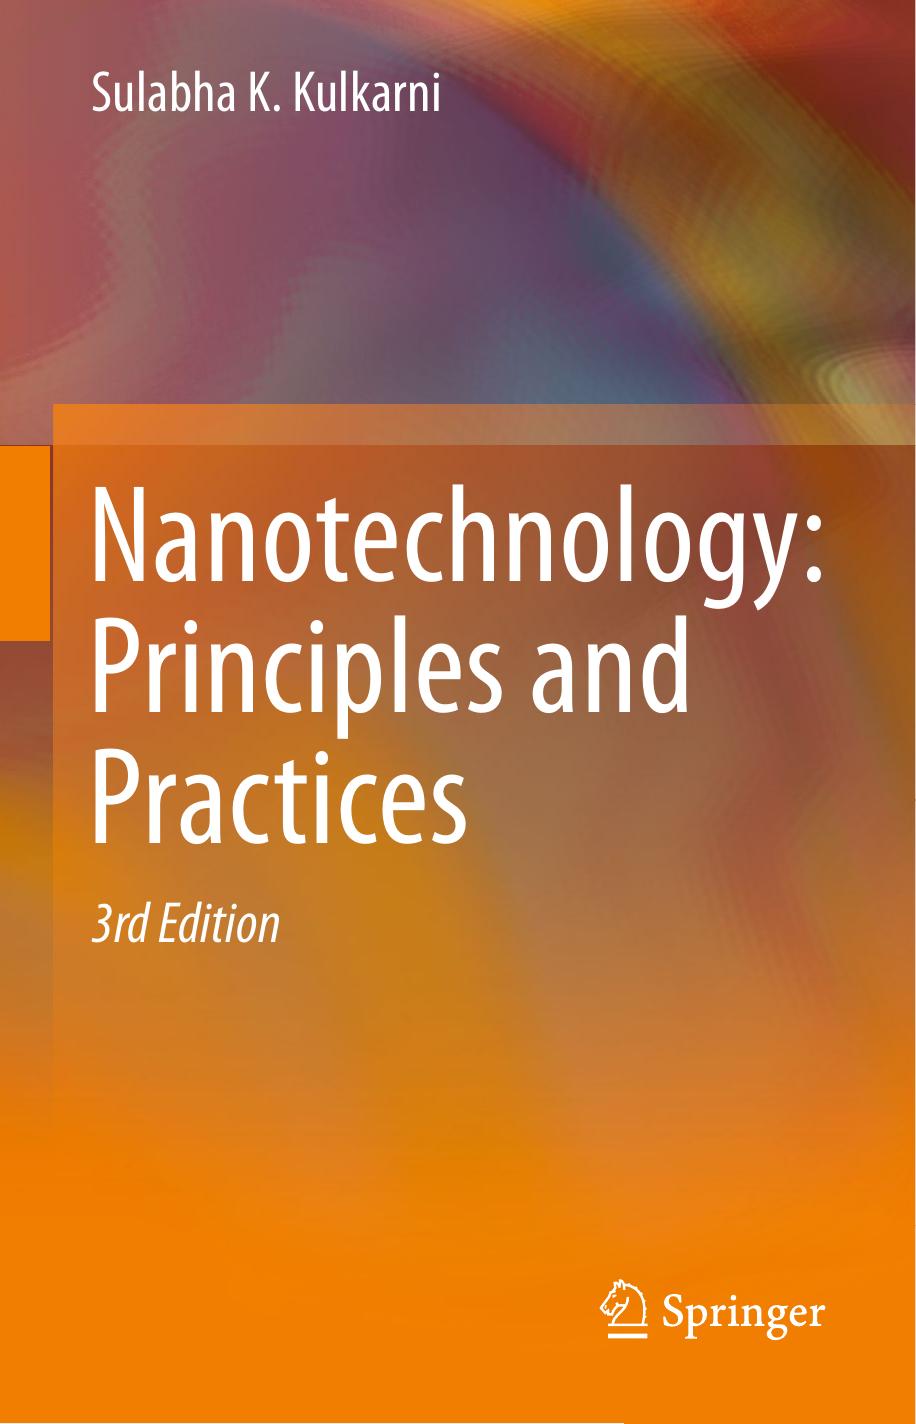 NanotechnologyPrinciplesAndPra 2015